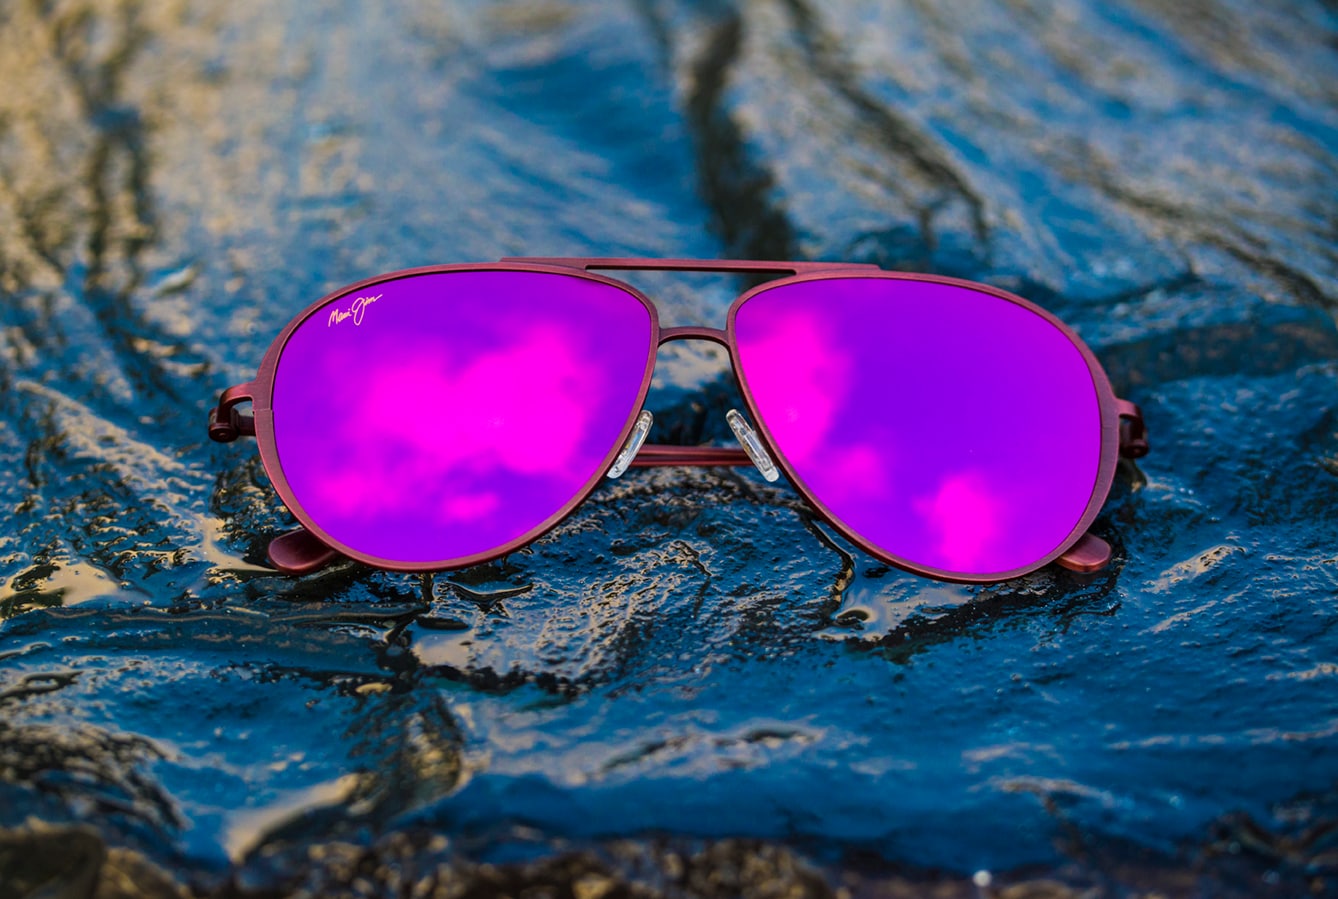 Sonnenbrille Shallows mit roséfarbenen Gläsern auf nassen Felsen